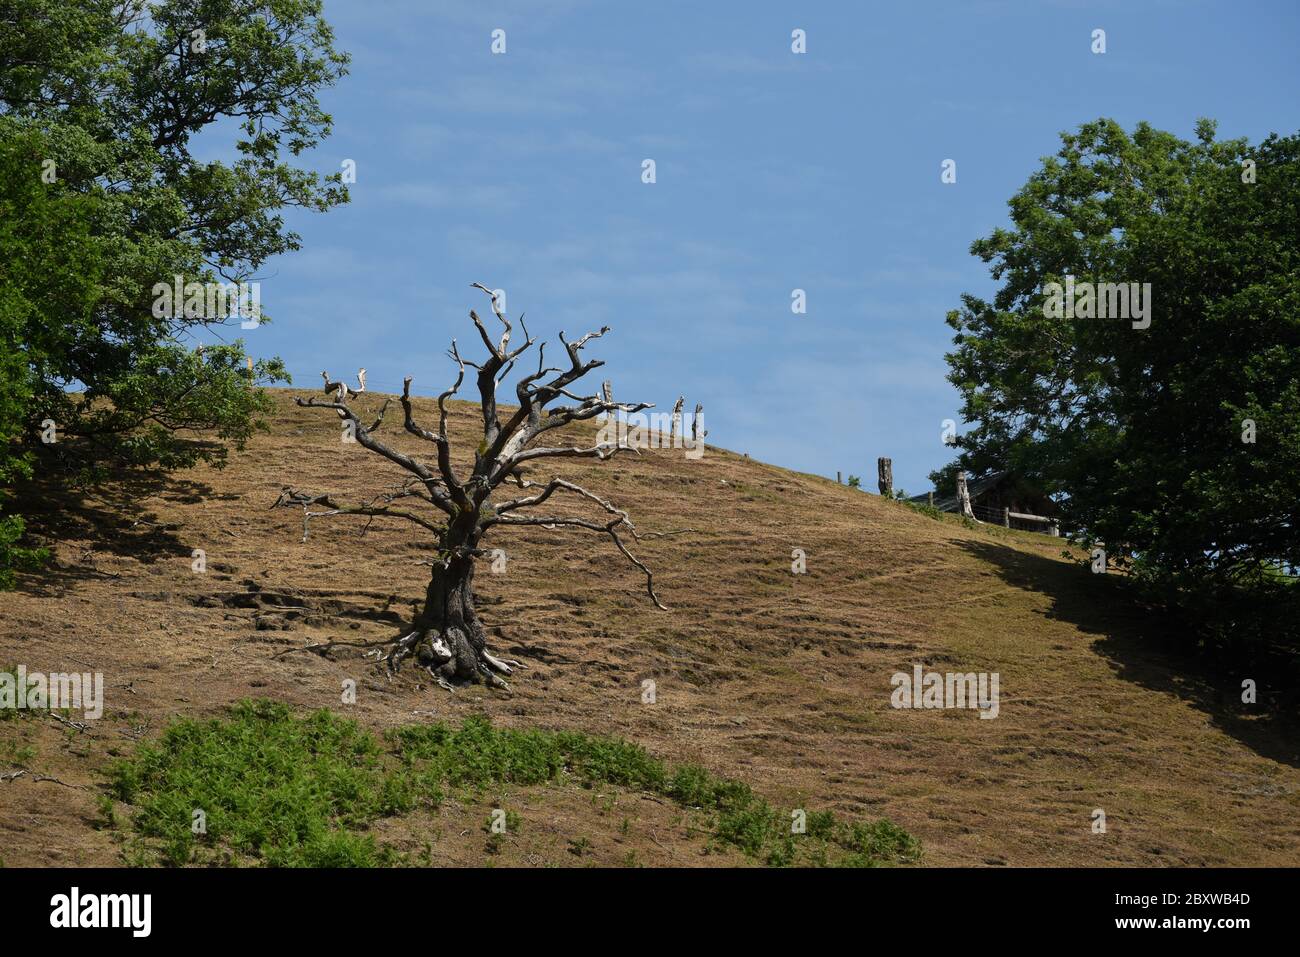 Dead tree in rural scene Stock Photo